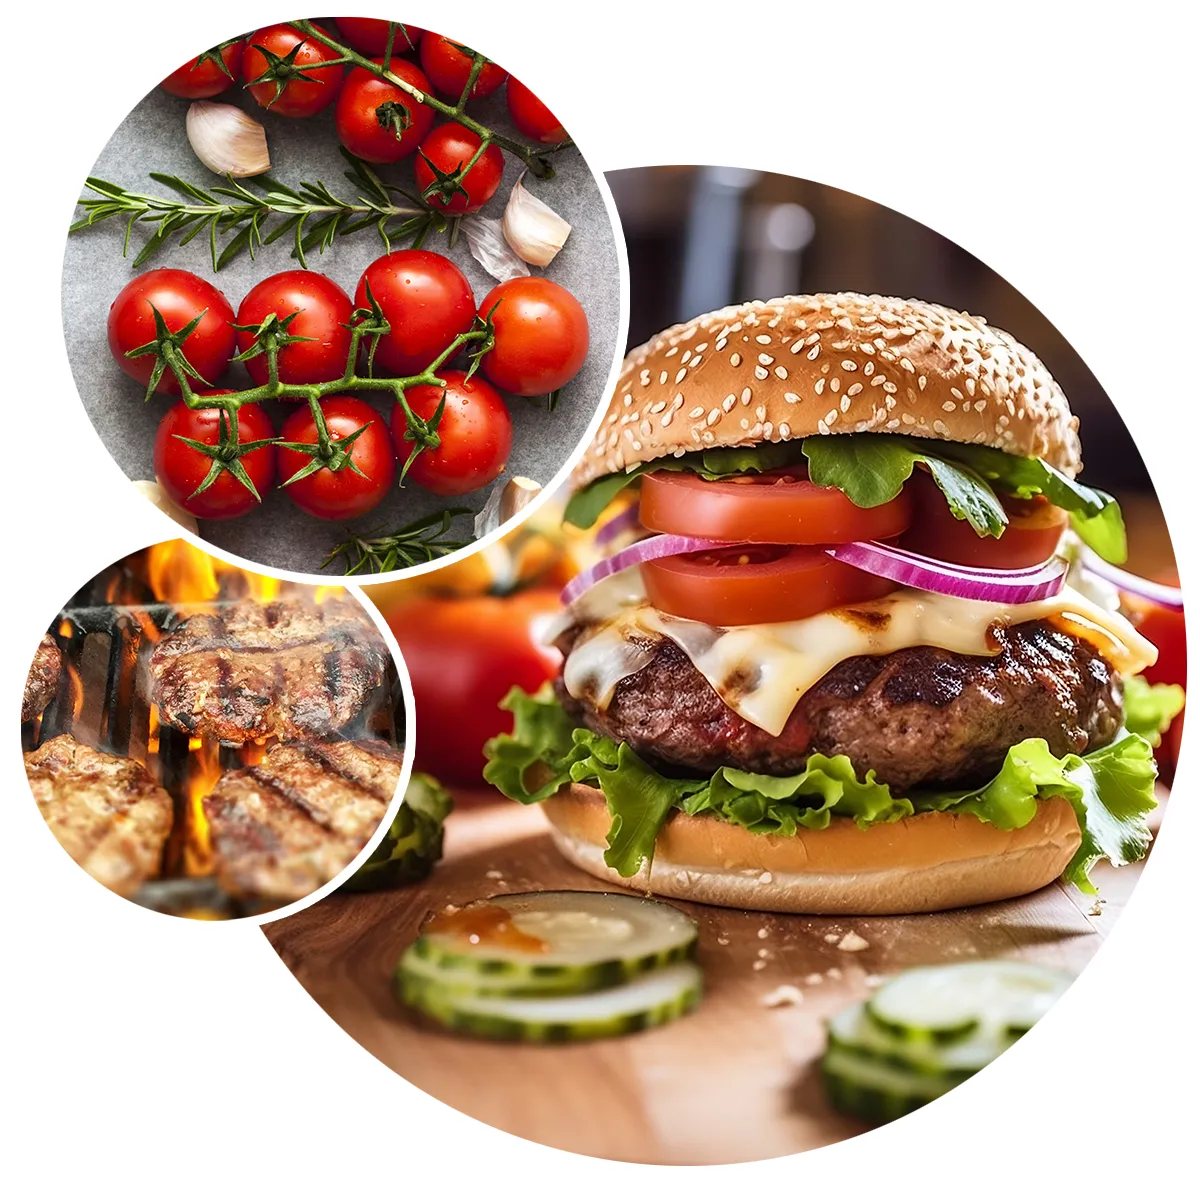 Saftiger Cheeseburger mit zwei weiteren Bildern, die gegrillte Burgerpatties und Tomaten zeigen